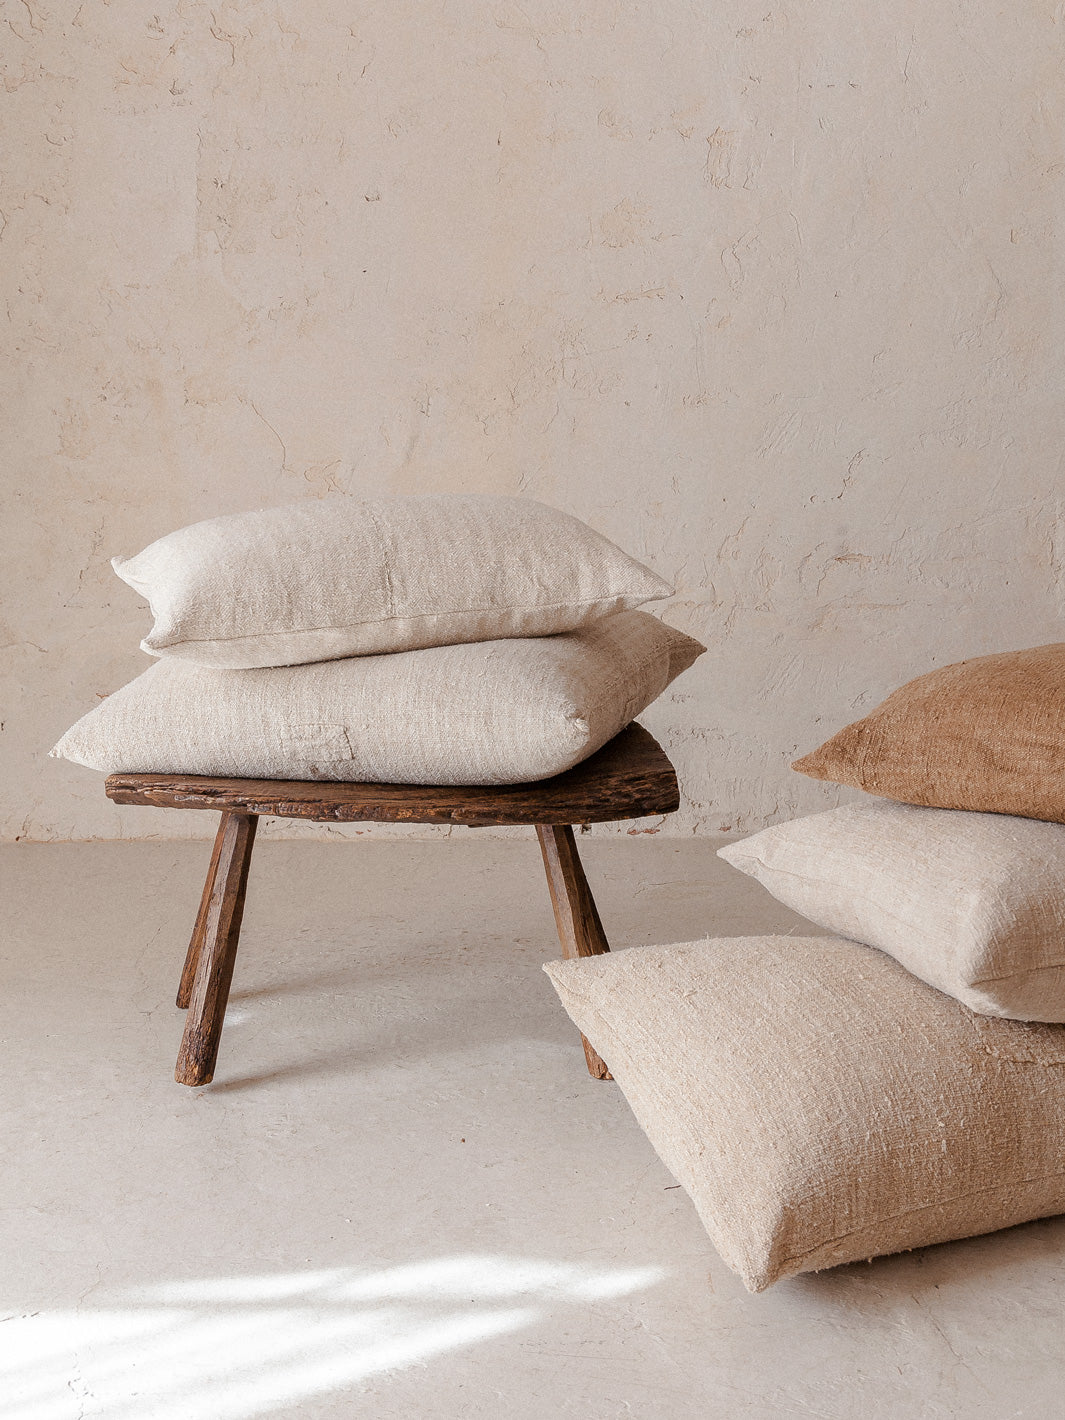 Antique hemp cushion Isabelle Yamamoto 55x55cm natural